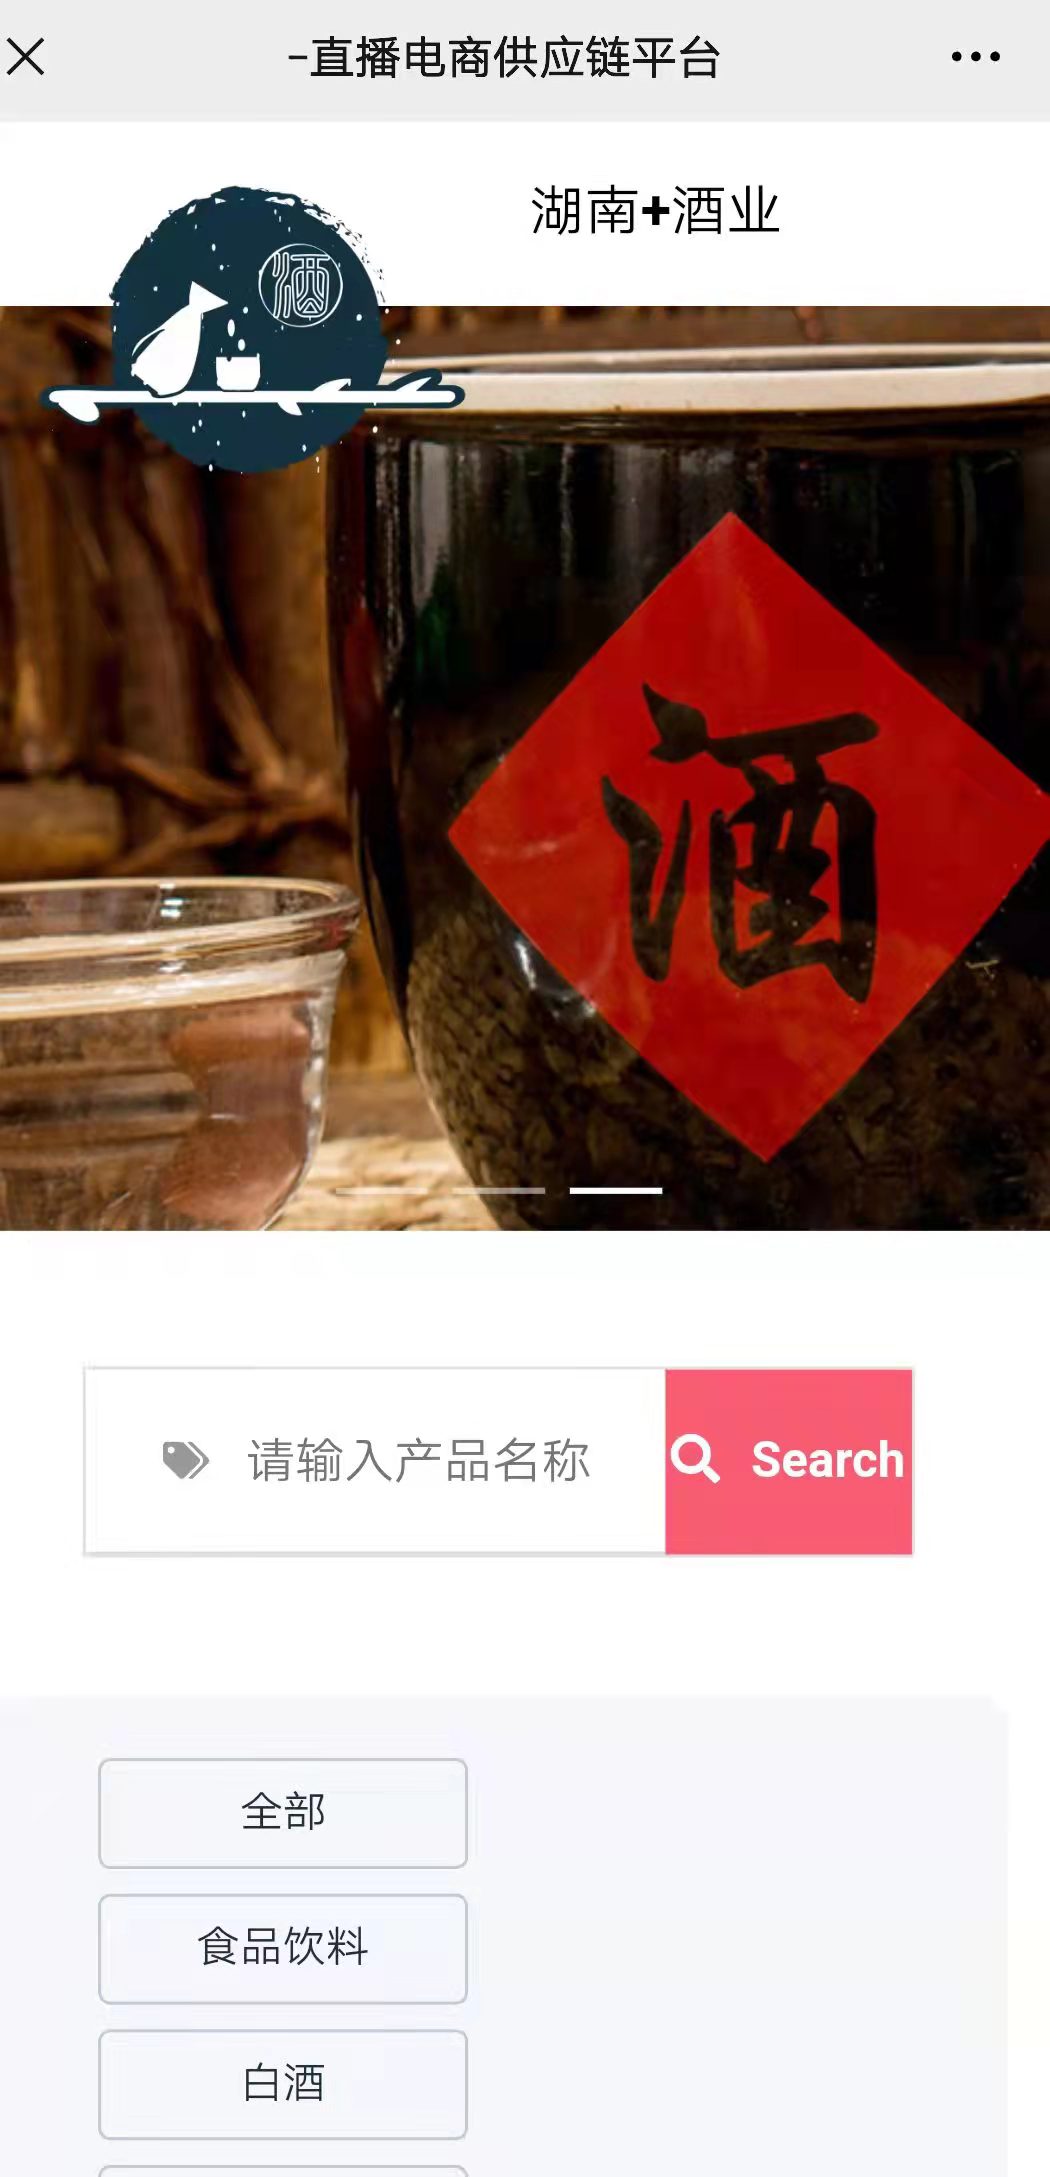 湖南酒业整合行业招商运营资源的专业平台